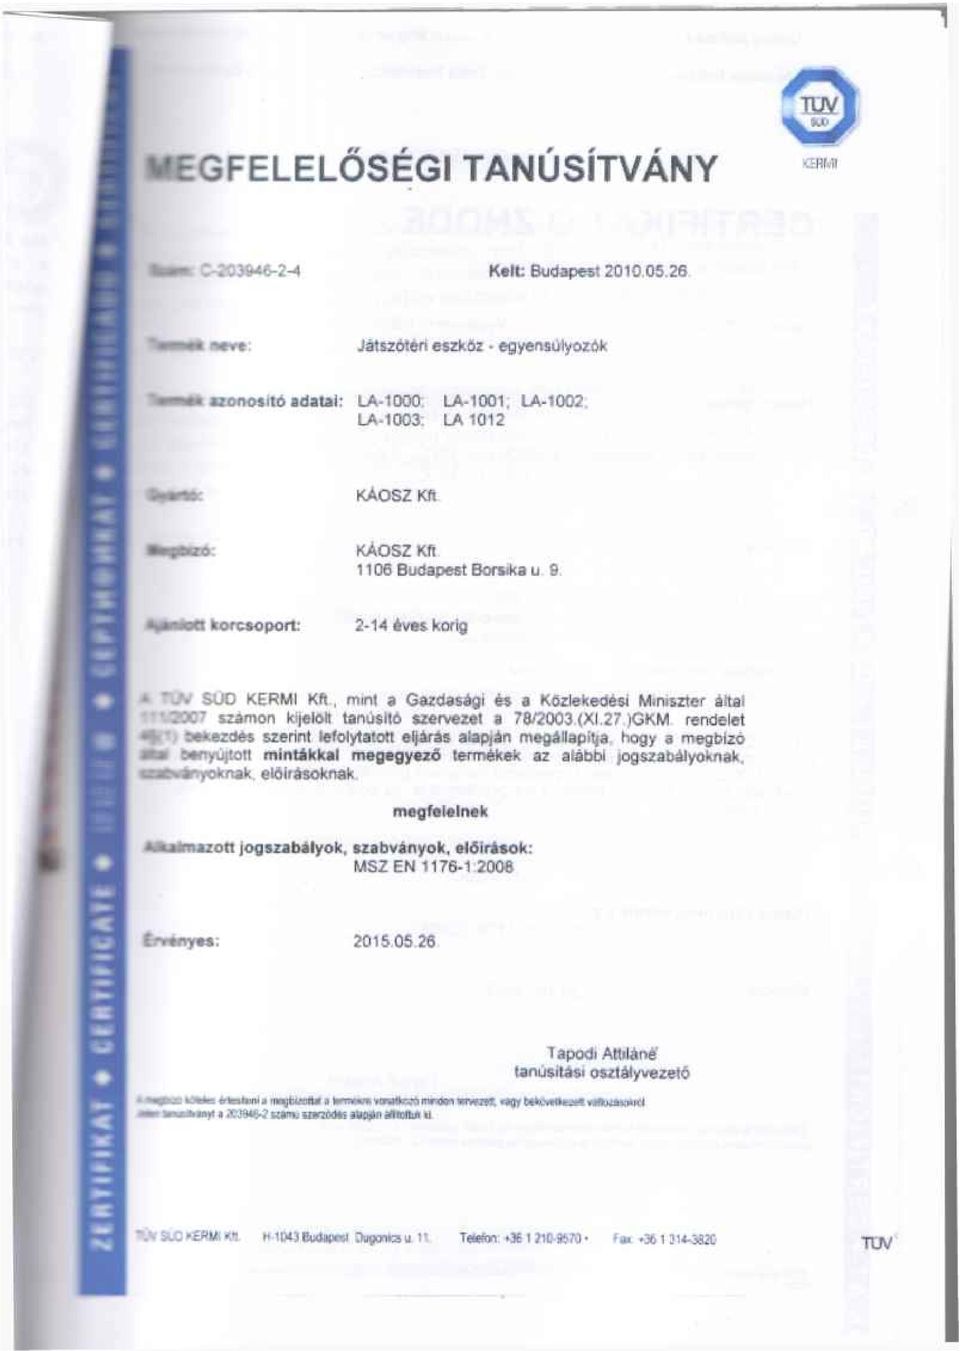 SUD KERMI Kft, rninl a Gasdaségi és a Kôzlekedési Mmiszter áftat szamon kfjelolt tanúsitó szerve2et a 78/2003,(XL27.